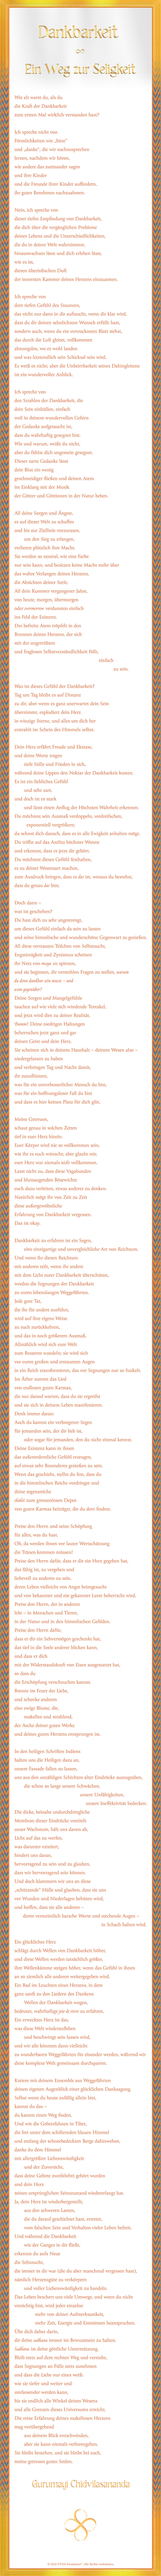 German Poem